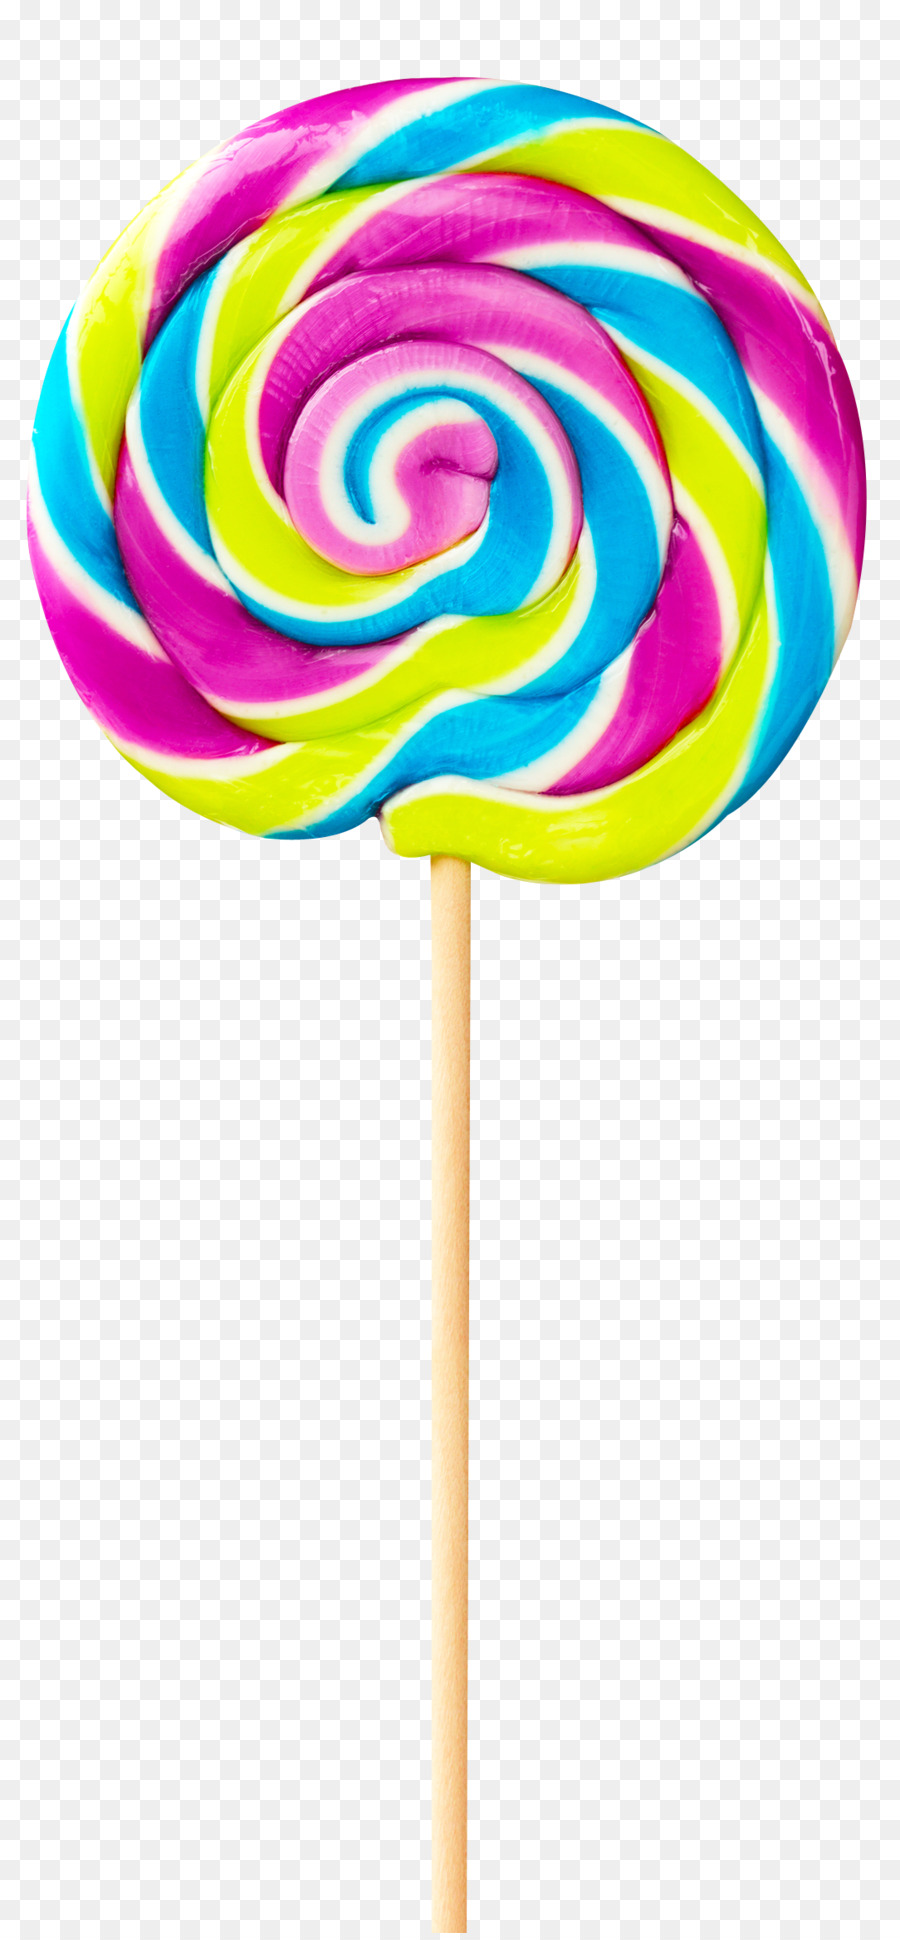 Lollipop Stick candy - Lollipop png download - 1084*2328 - Free Transparent Lollipop png Download.